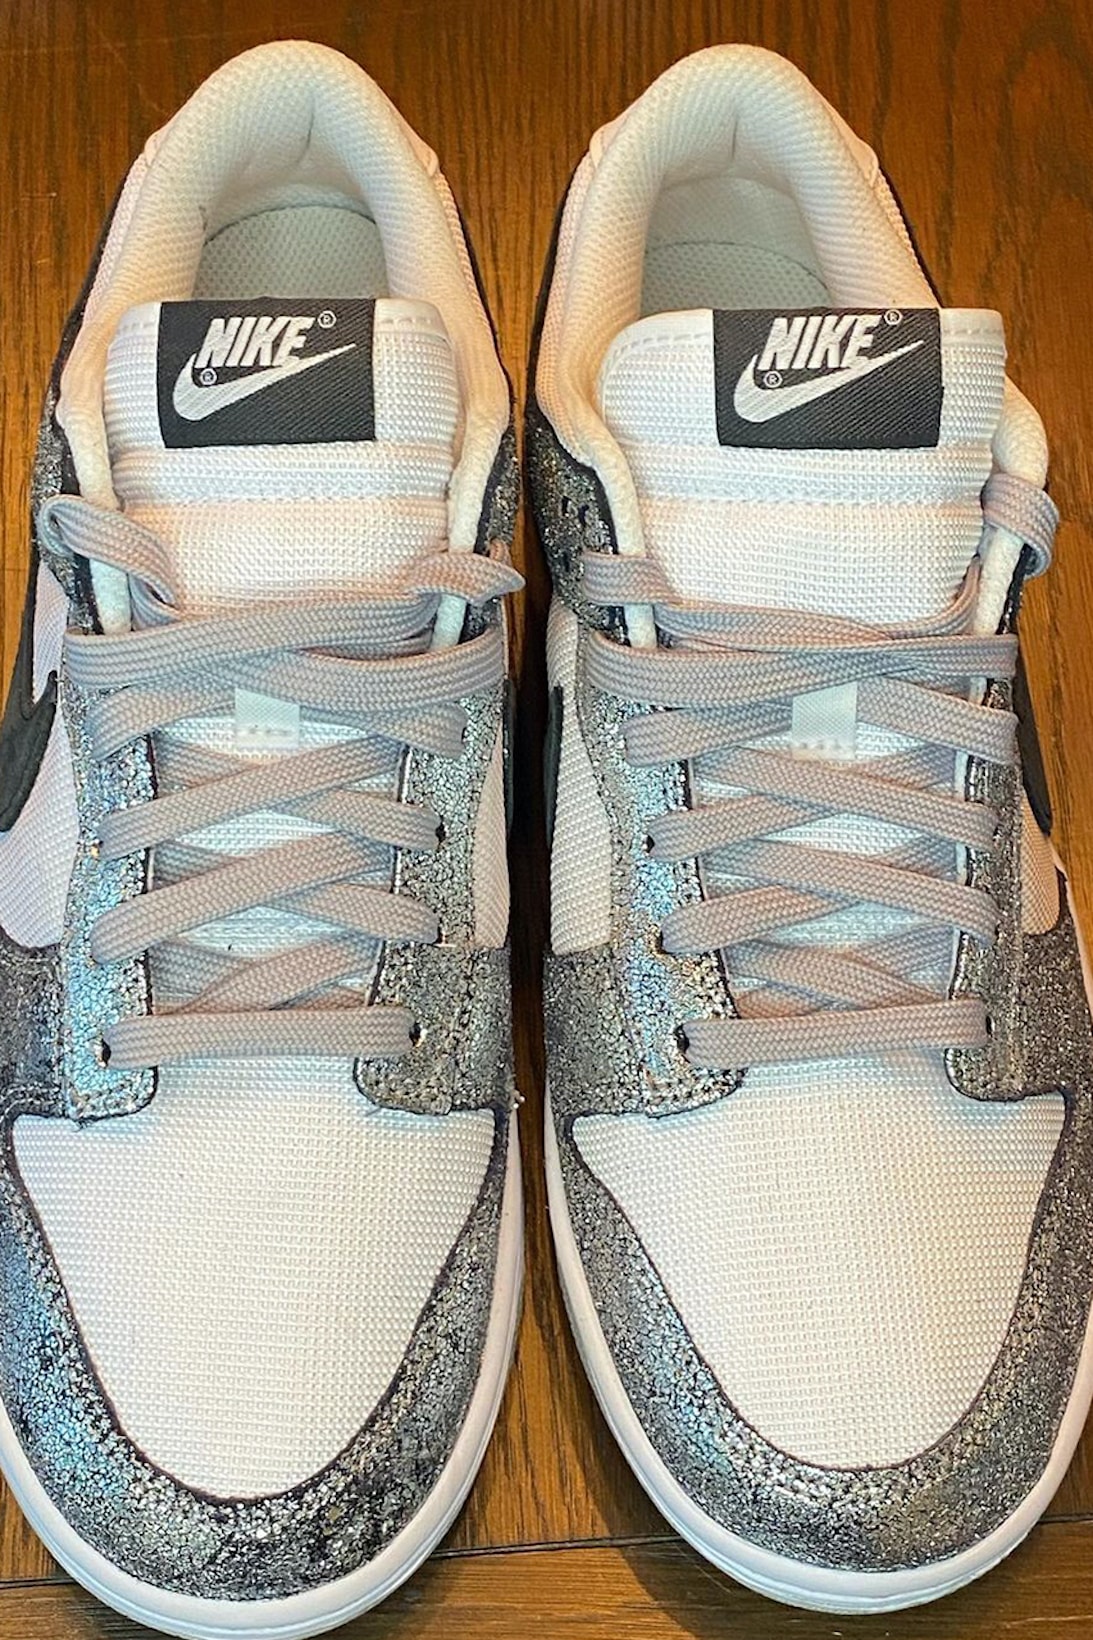 nike dunk low shimmer gray silver white sneakers footwear shoes kicks sneakerhead